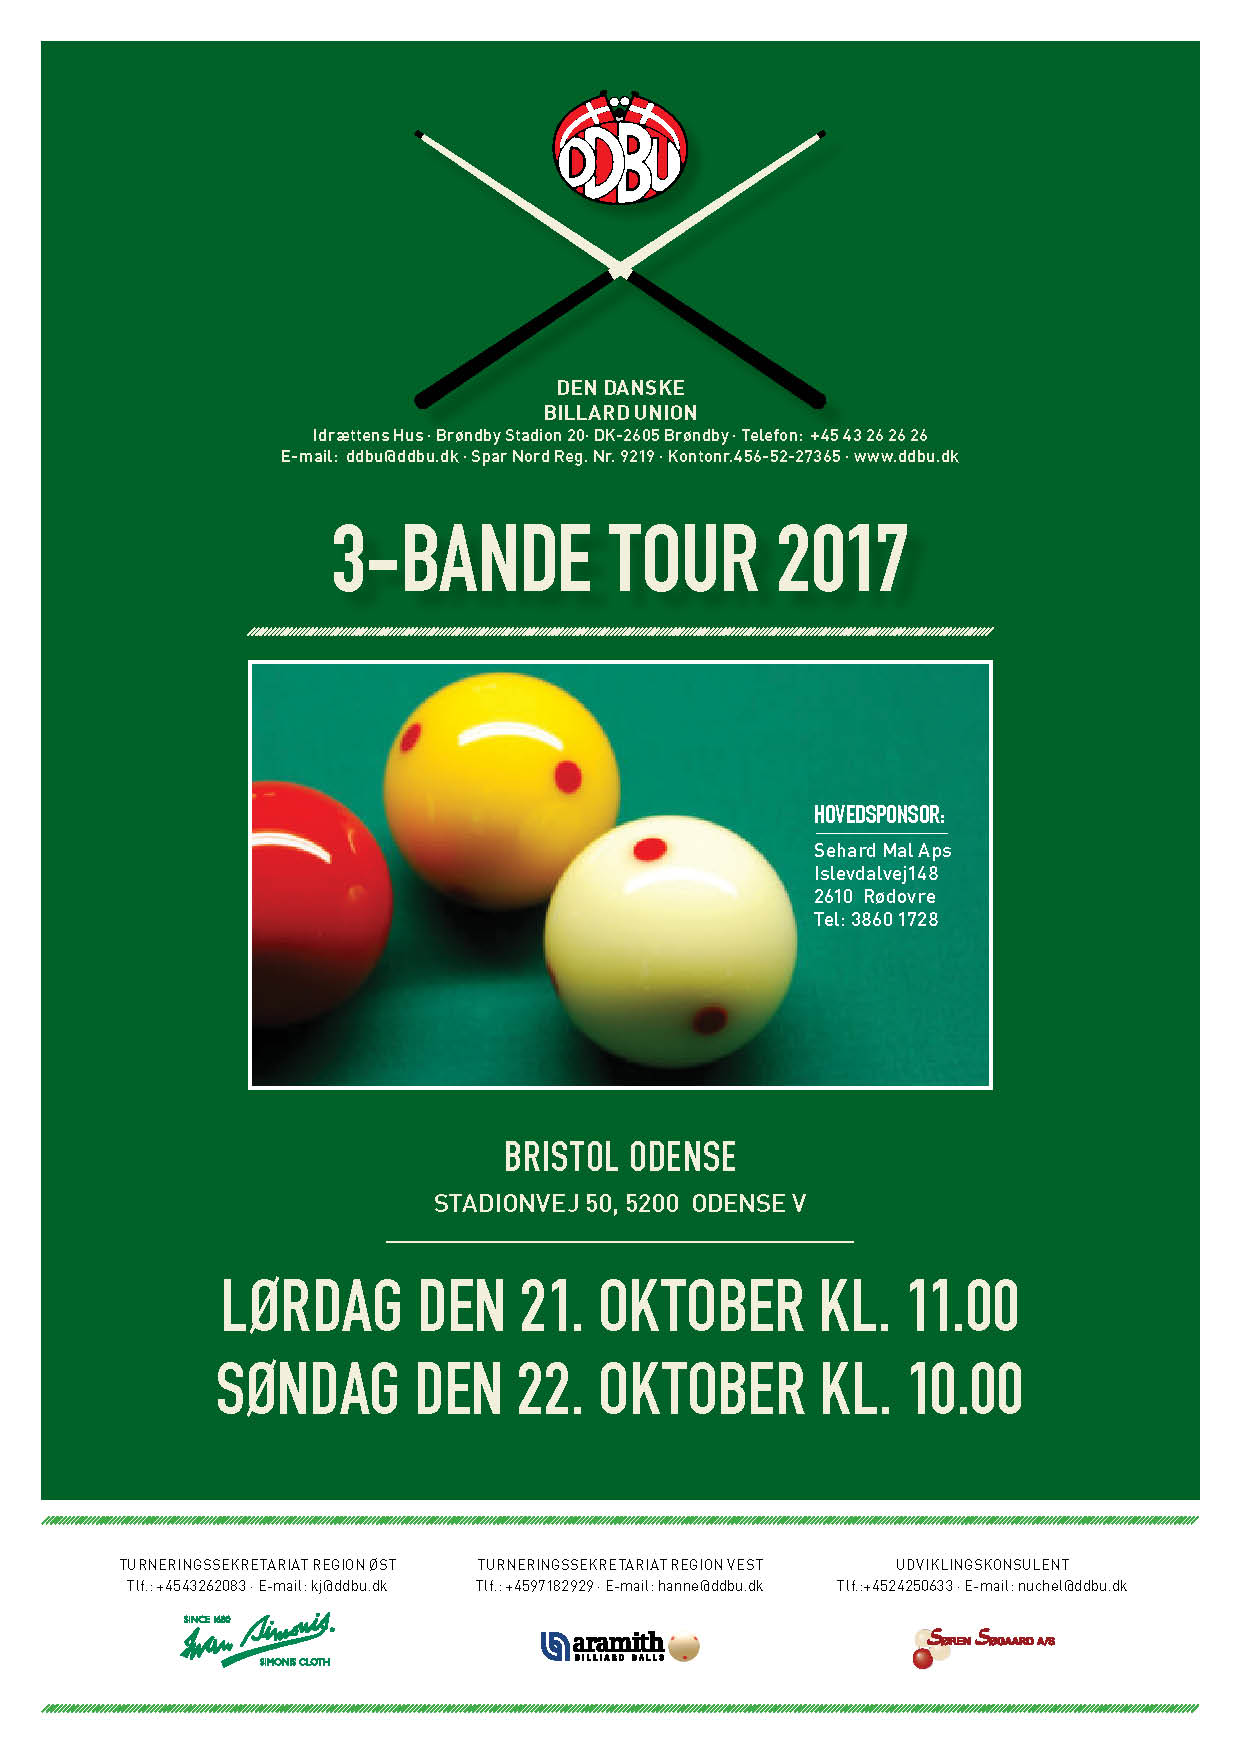 at lege invadere Falde sammen Sehard 3-Bande Tour 6 i Bristol Odense den 21 og 22 oktober – Den Danske  Billard Union